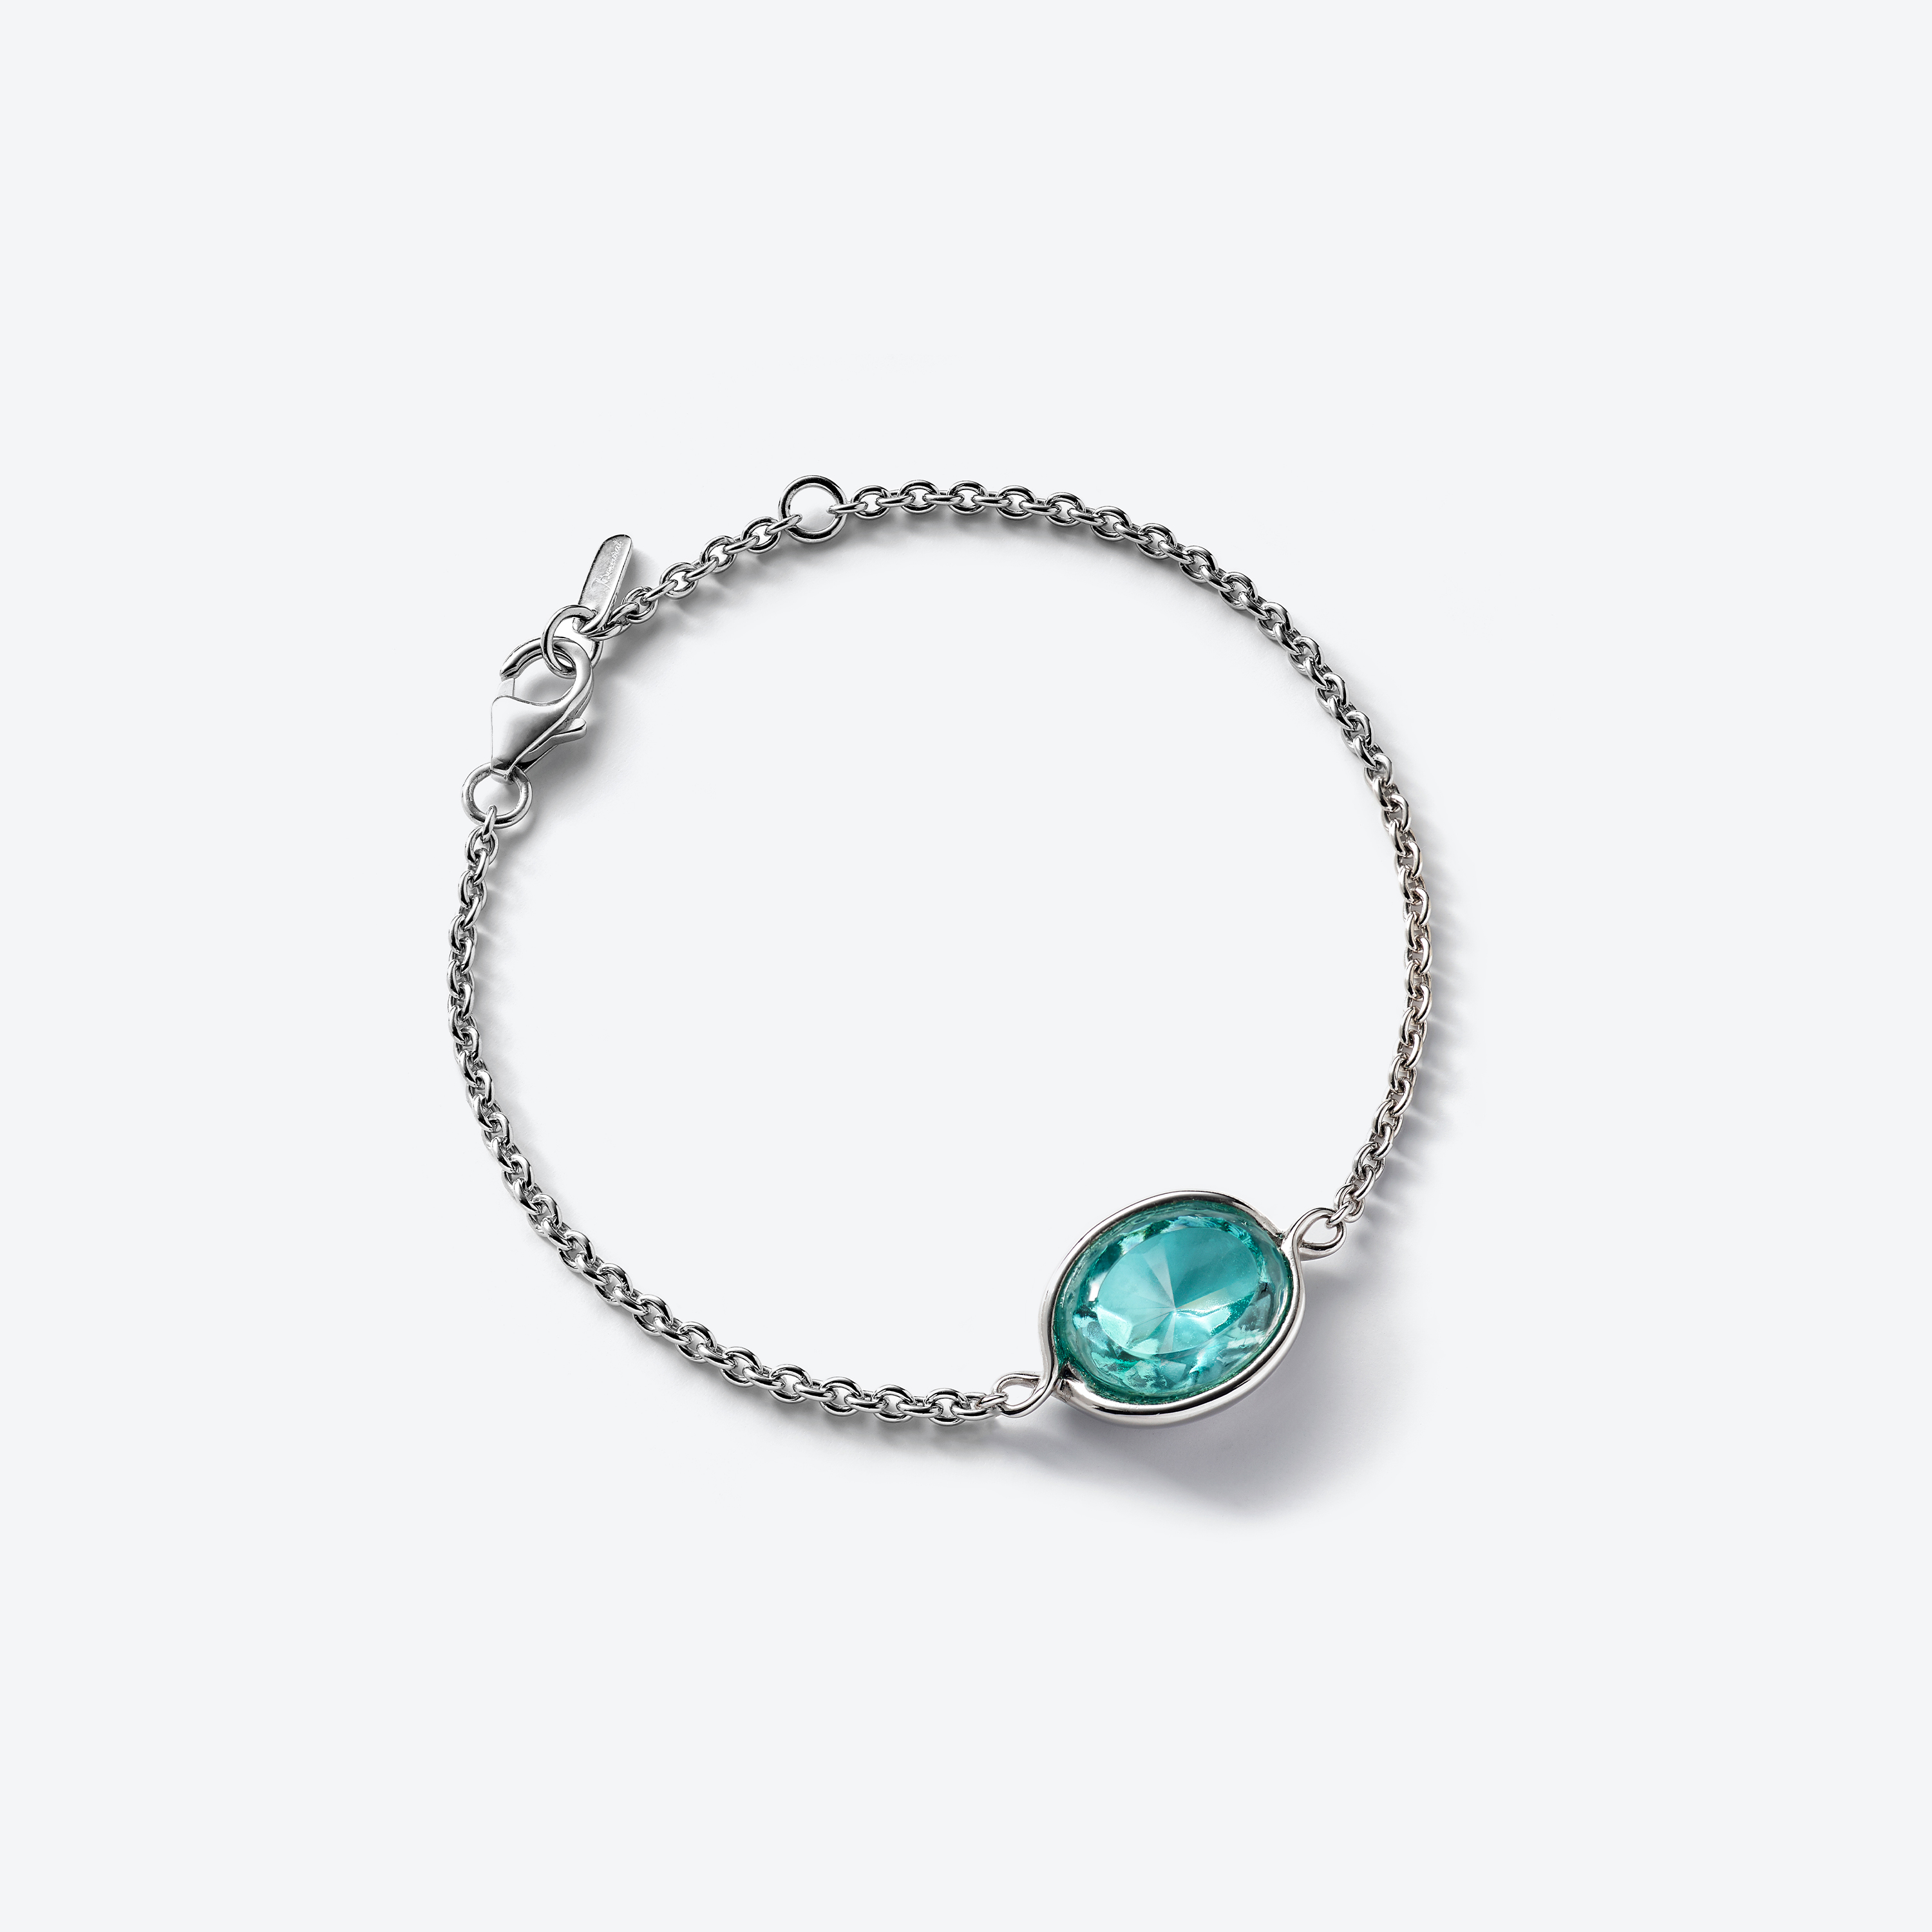 Baccarat | Croisé Silver Bracelet | Turquoise